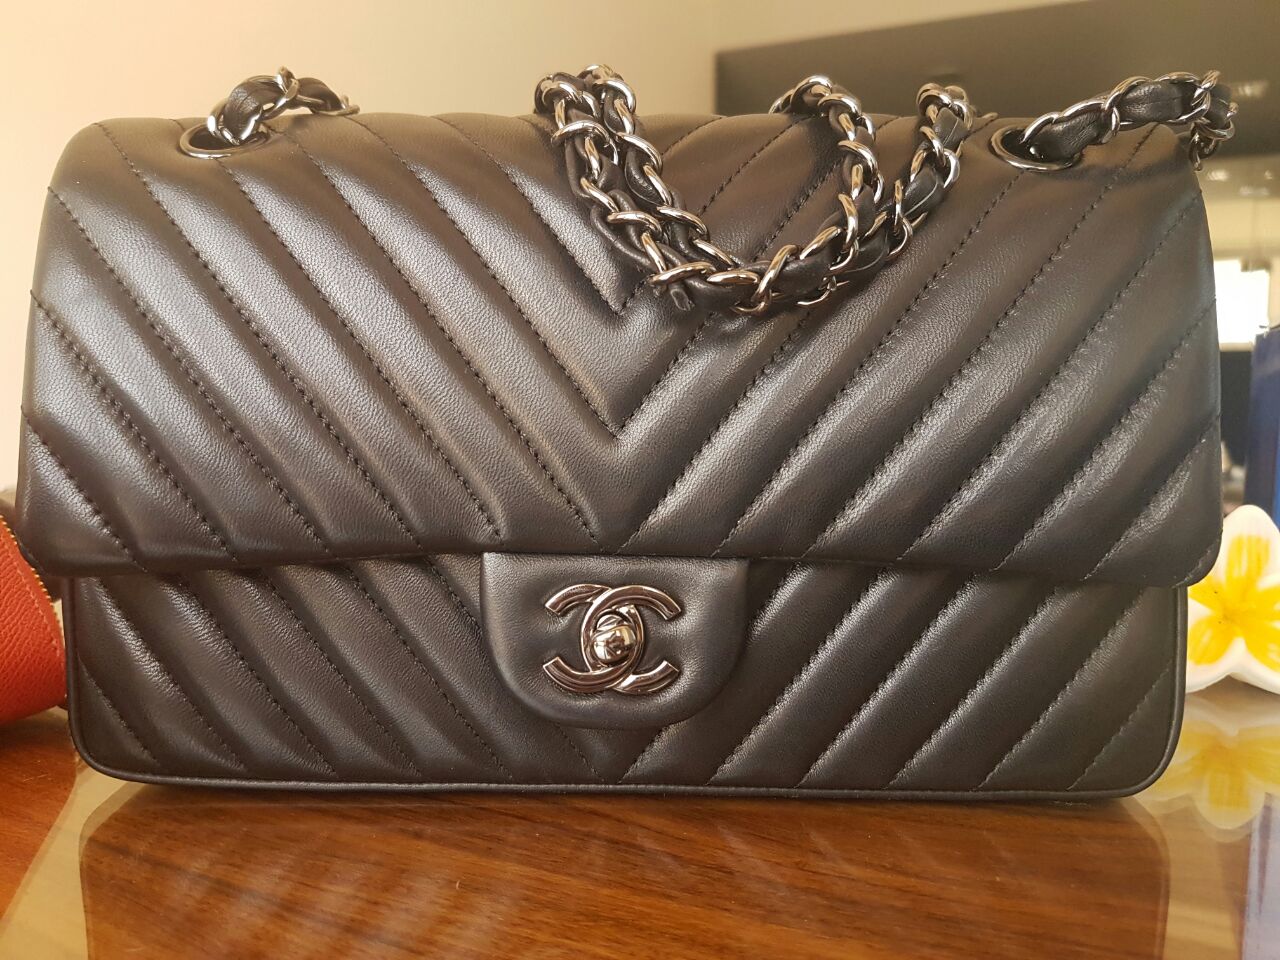 Fake Luxury Bags In Dubai | semashow.com